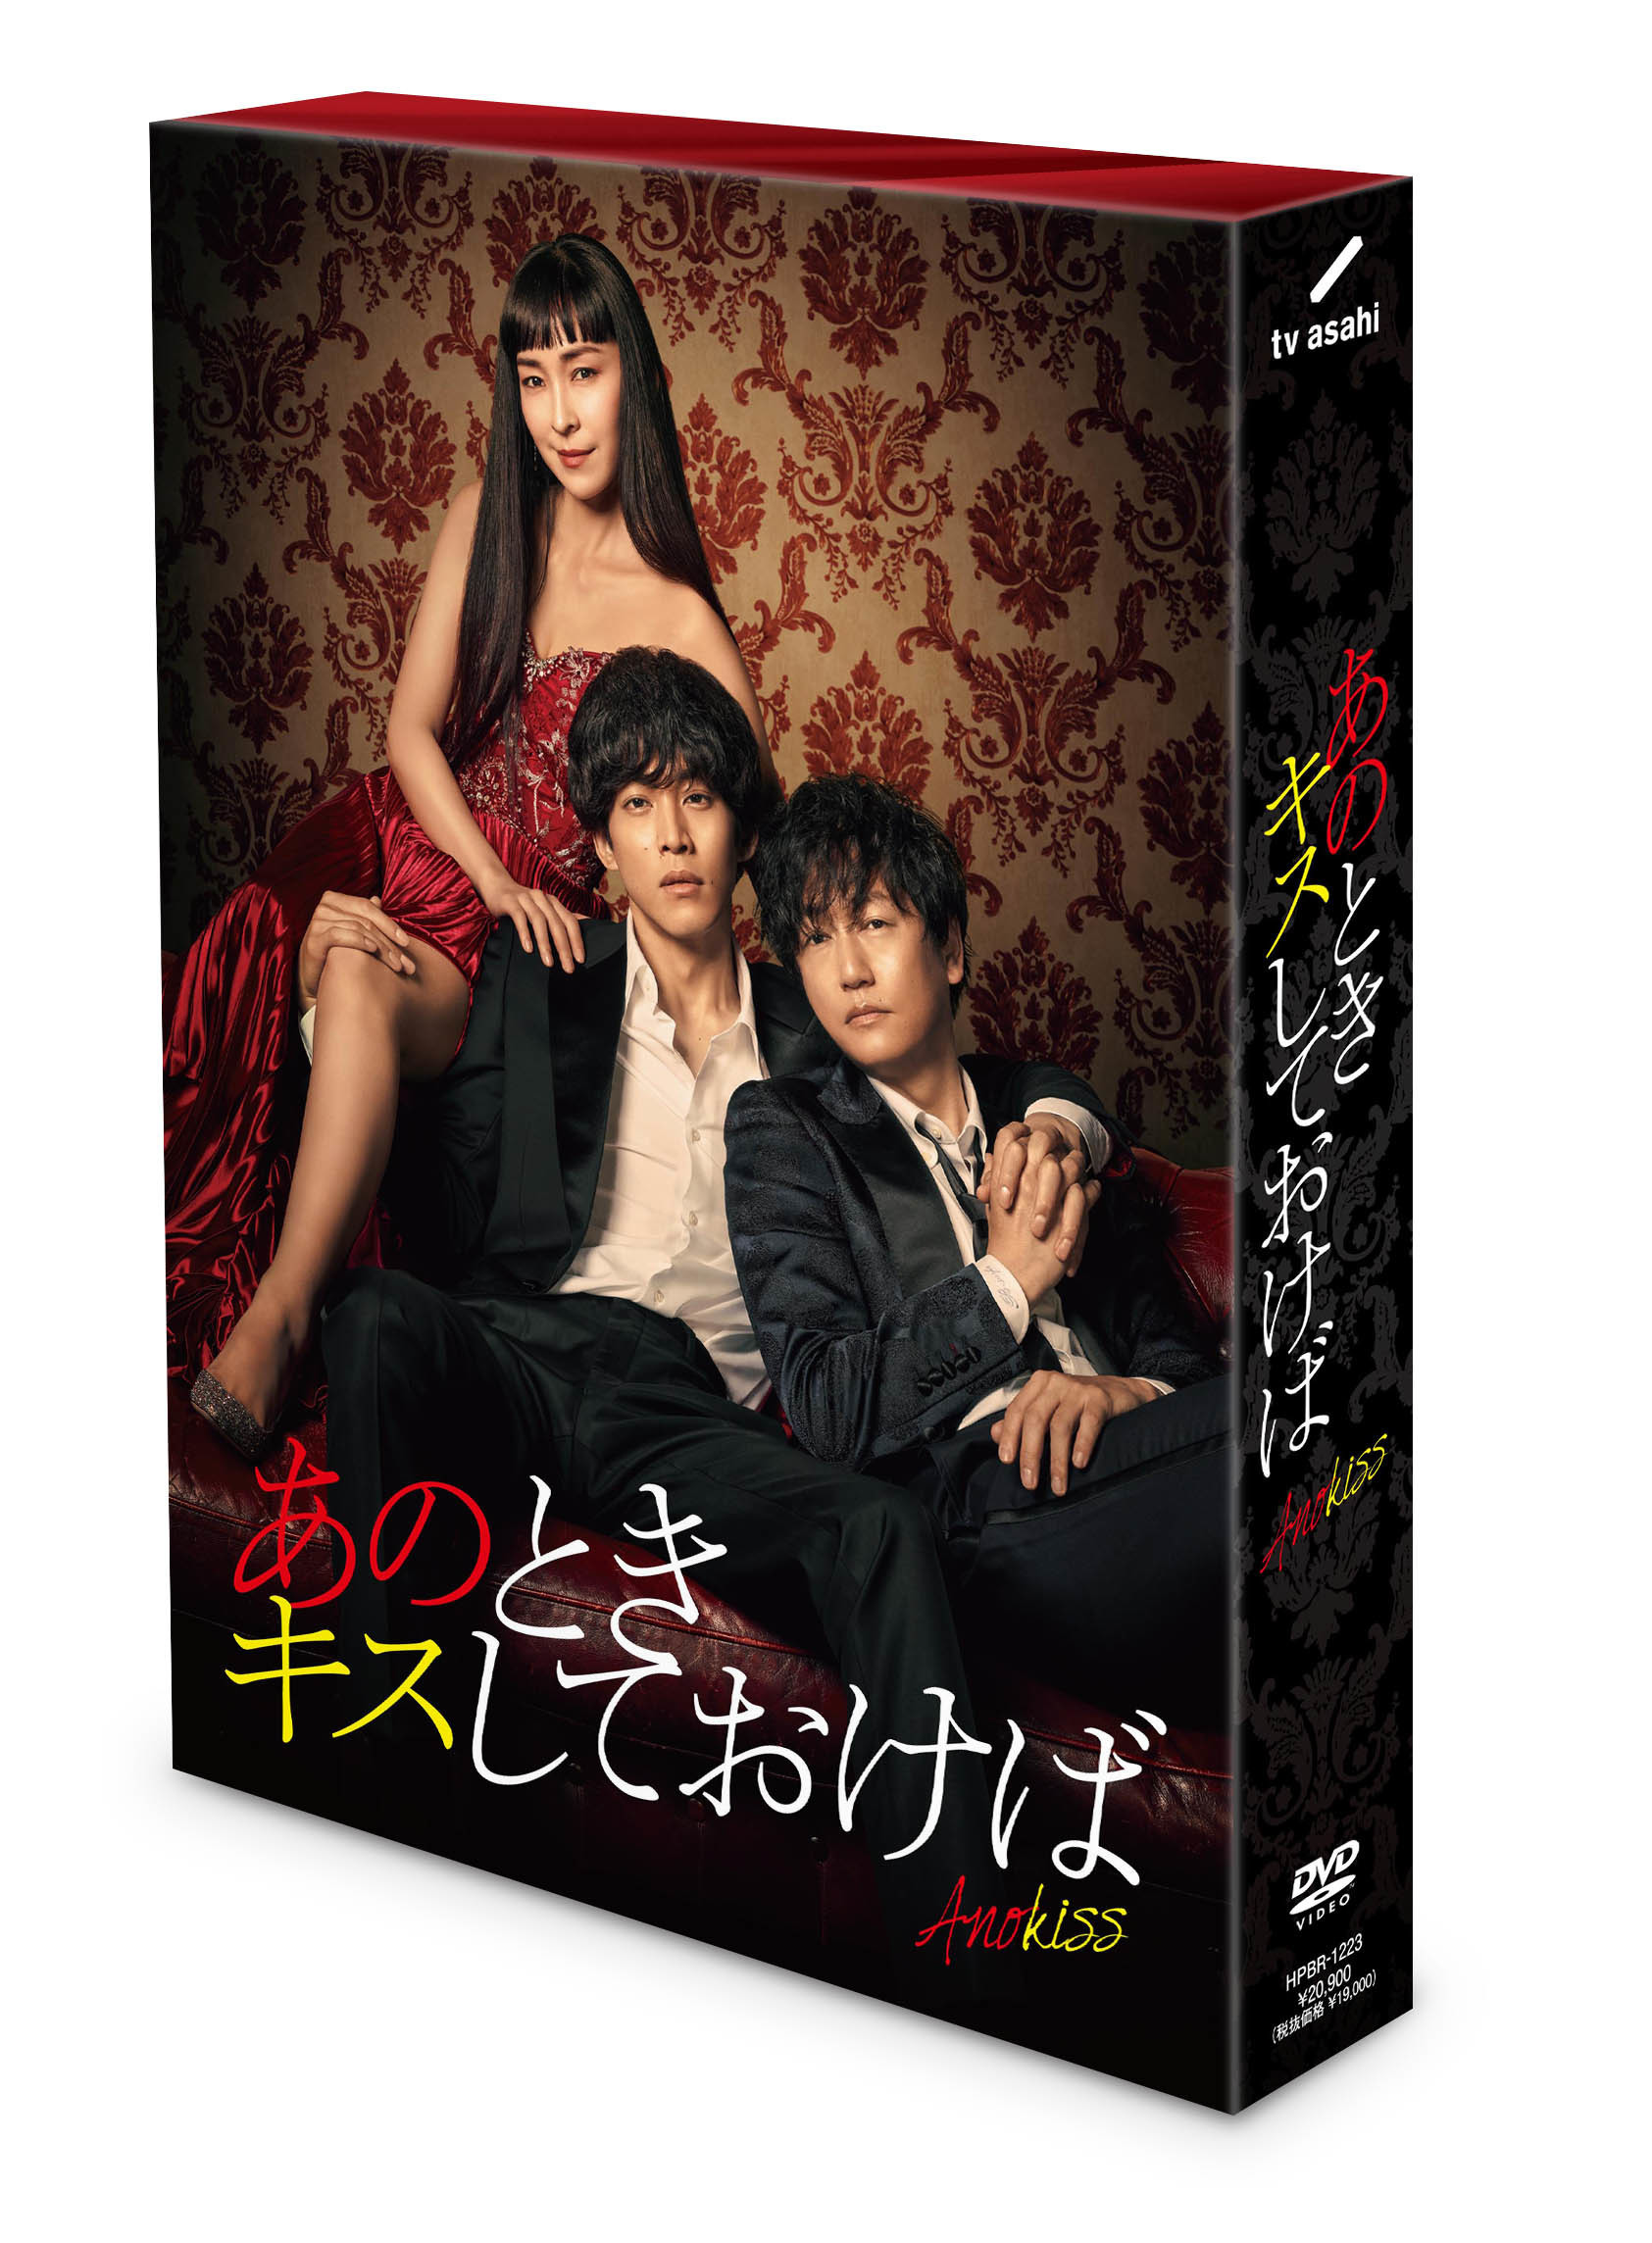 ドラマ「あのときキスしておけば」DVD-BOX | 松坂桃李 | TopCoat 